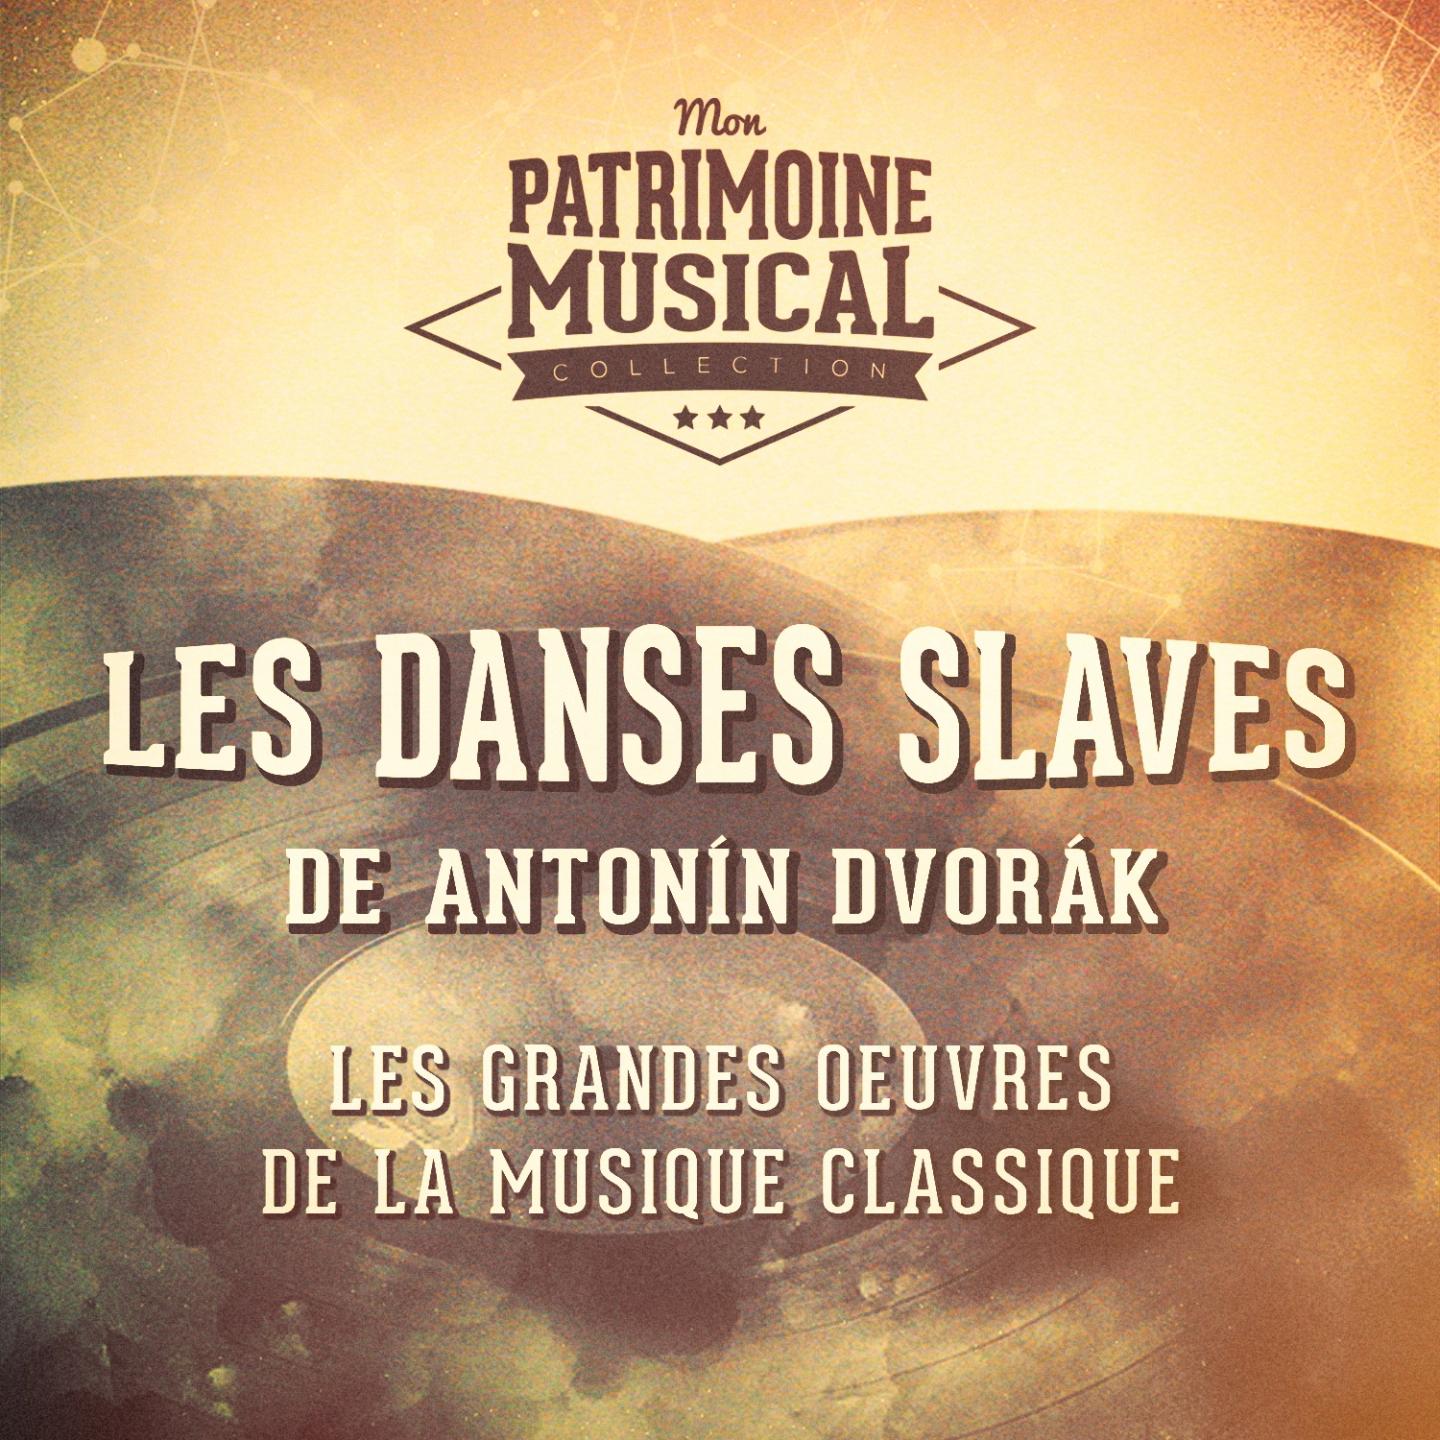 Dances slaves no. 1 en ut majeur, op. 46 : presto